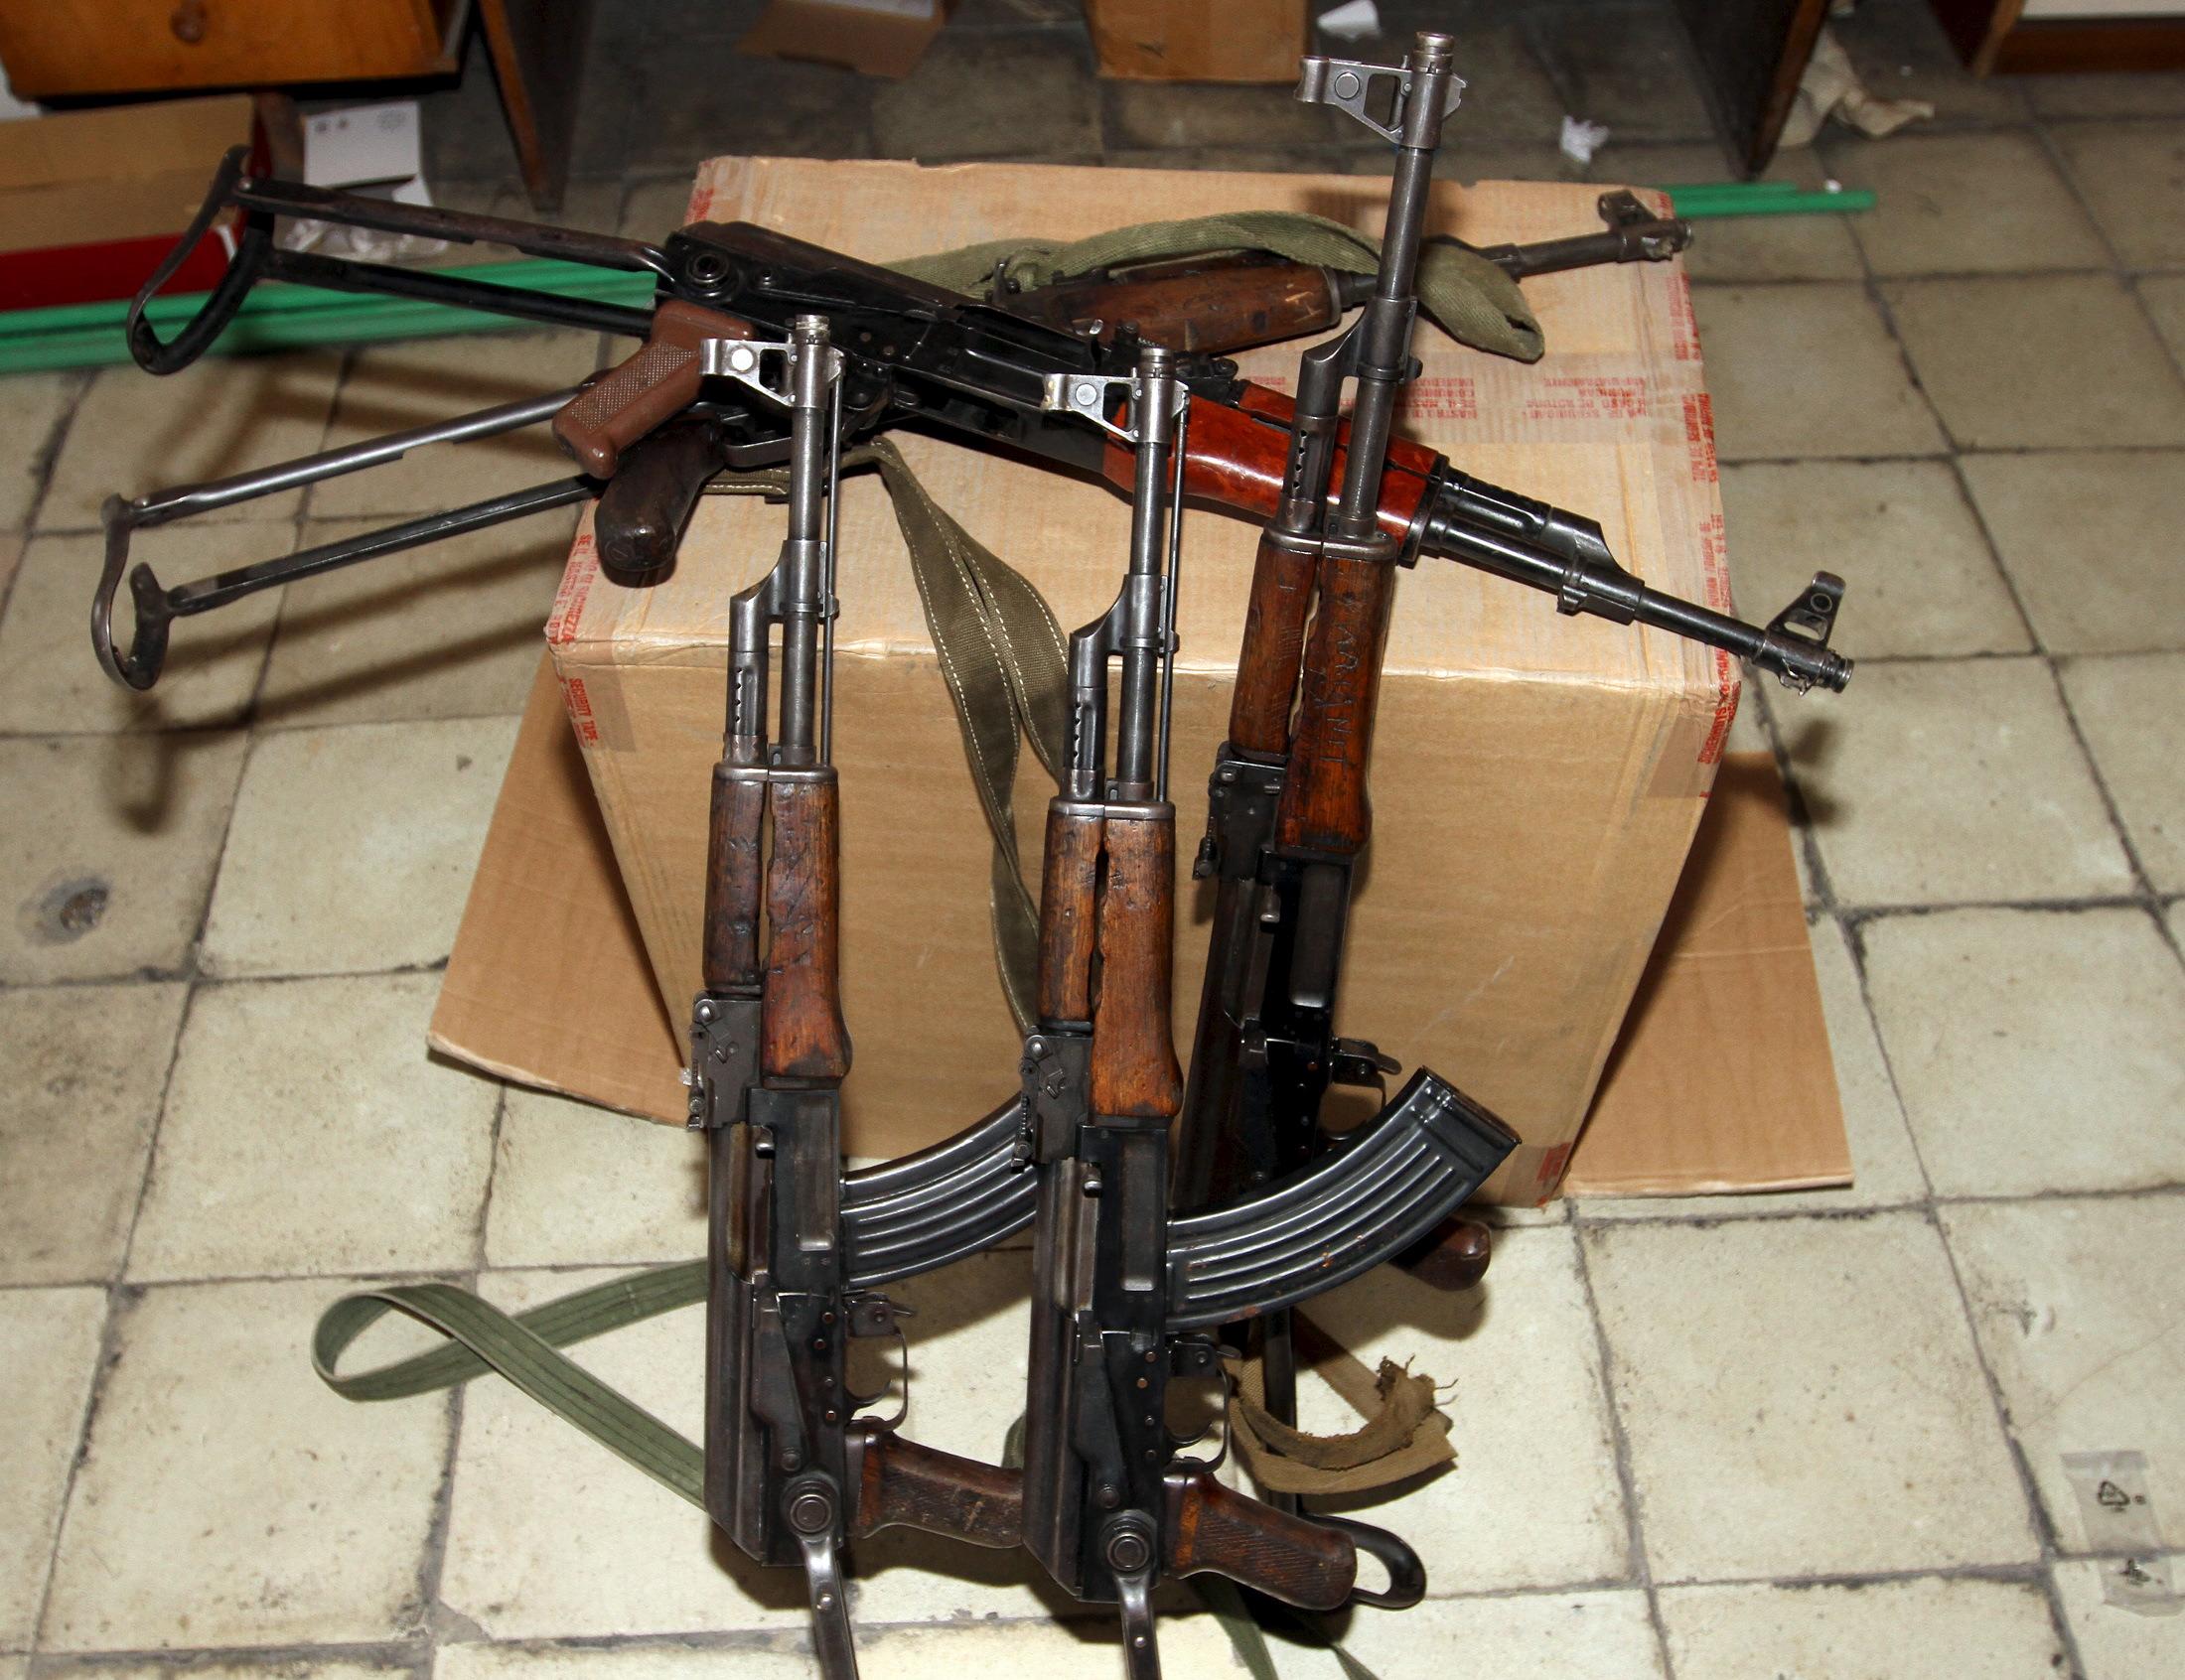 AK-47-eseket foglaltak le a napokban egy bűnszervezetnél tartott razzián